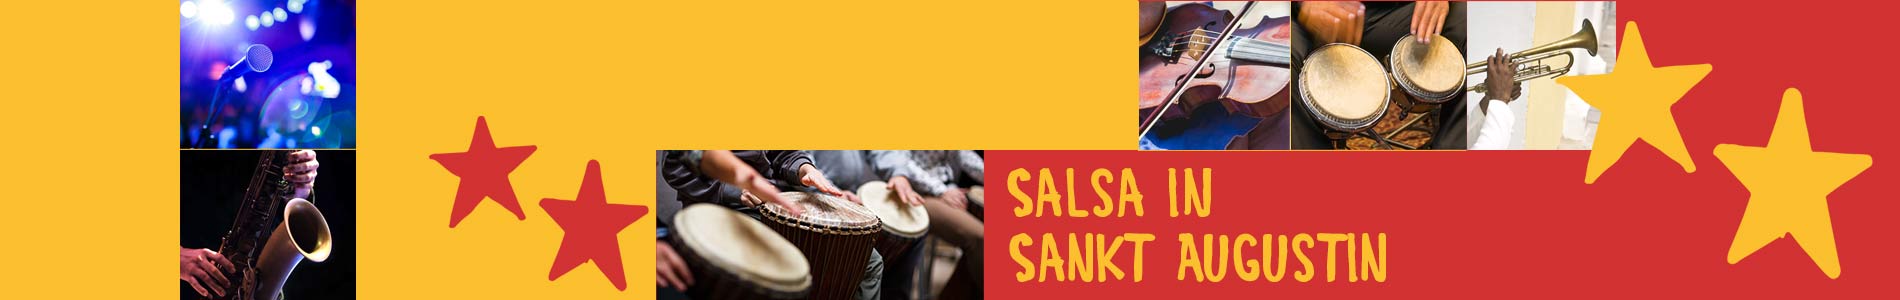 Salsa in Sankt Augustin – Salsa lernen und tanzen, Tanzkurse, Partys, Veranstaltungen